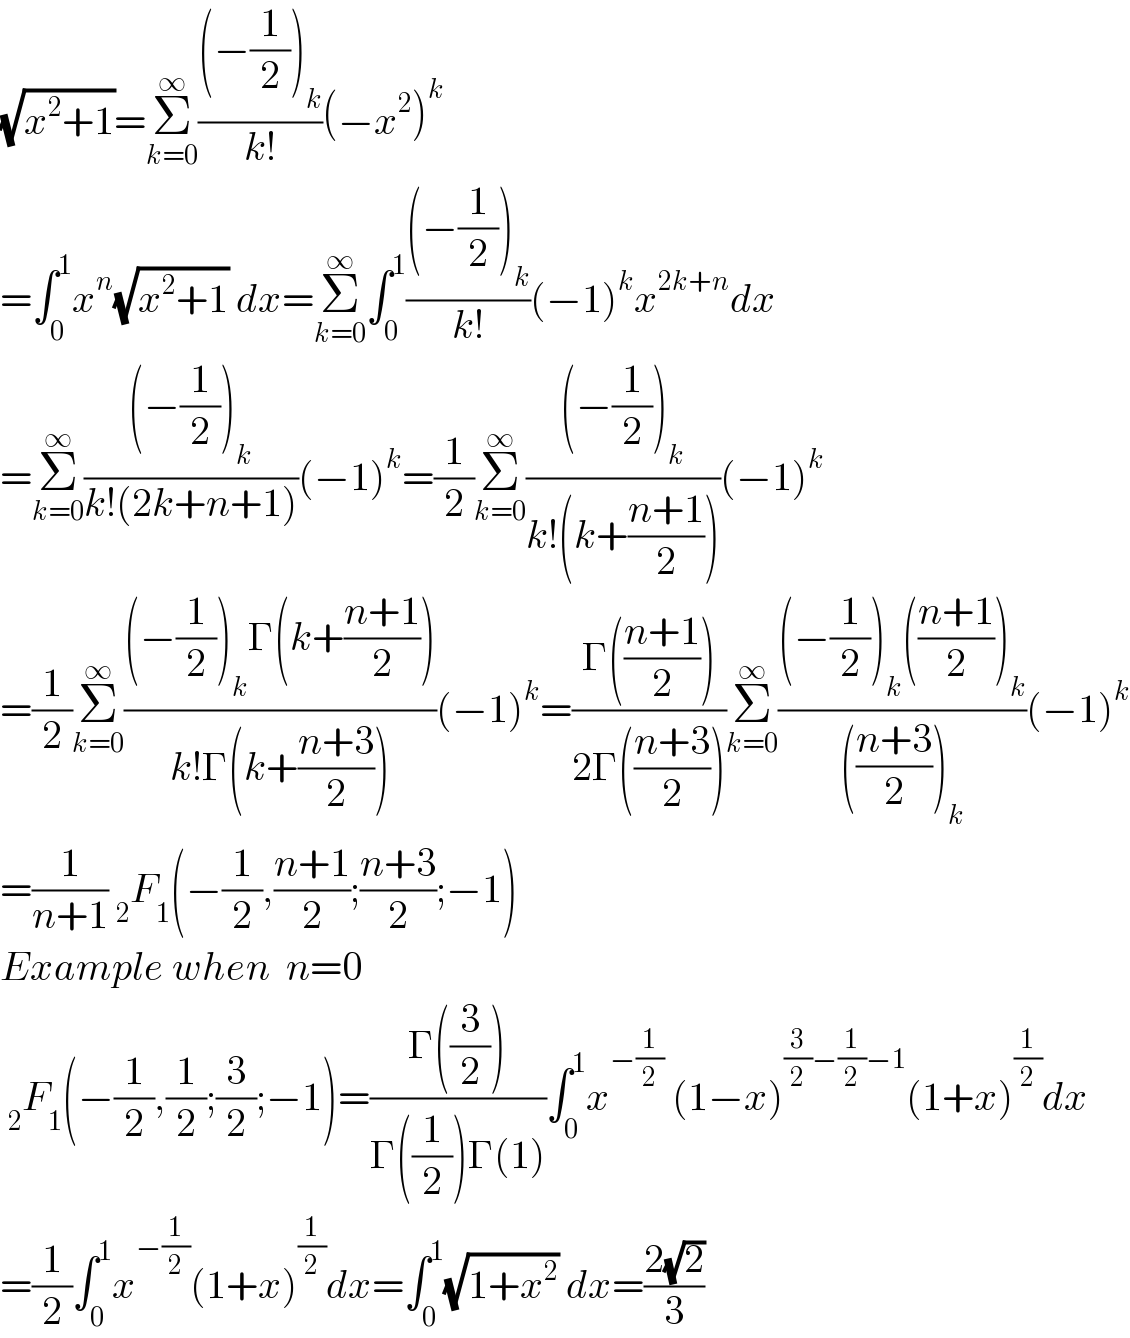 (√(x^2 +1))=Σ_(k=0) ^∞ (((−(1/2))_k )/(k!))(−x^2 )^k   =∫_0 ^1 x^n (√(x^2 +1)) dx=Σ_(k=0) ^∞ ∫_0 ^1 (((−(1/2))_k )/(k!))(−1)^k x^(2k+n) dx  =Σ_(k=0) ^∞ (((−(1/2))_k )/(k!(2k+n+1)))(−1)^k =(1/2)Σ_(k=0) ^∞ (((−(1/2))_k )/(k!(k+((n+1)/2))))(−1)^k   =(1/2)Σ_(k=0) ^∞ (((−(1/2))_k Γ(k+((n+1)/2)))/(k!Γ(k+((n+3)/2))))(−1)^k =((Γ(((n+1)/2)))/(2Γ(((n+3)/2))))Σ_(k=0) ^∞ (((−(1/2))_k (((n+1)/2))_k )/((((n+3)/2))_k ))(−1)^k   =(1/(n+1)) _2 F_1 (−(1/2),((n+1)/2);((n+3)/2);−1)  Example when  n=0   _2 F_1 (−(1/2),(1/2);(3/2);−1)=((Γ((3/2)))/(Γ((1/2))Γ(1)))∫_0 ^1 x^(−(1/2))  (1−x)^((3/2)−(1/2)−1) (1+x)^(1/2) dx  =(1/2)∫_0 ^1 x^(−(1/2)) (1+x)^(1/2) dx=∫_0 ^1 (√(1+x^2 )) dx=((2(√2))/3)  